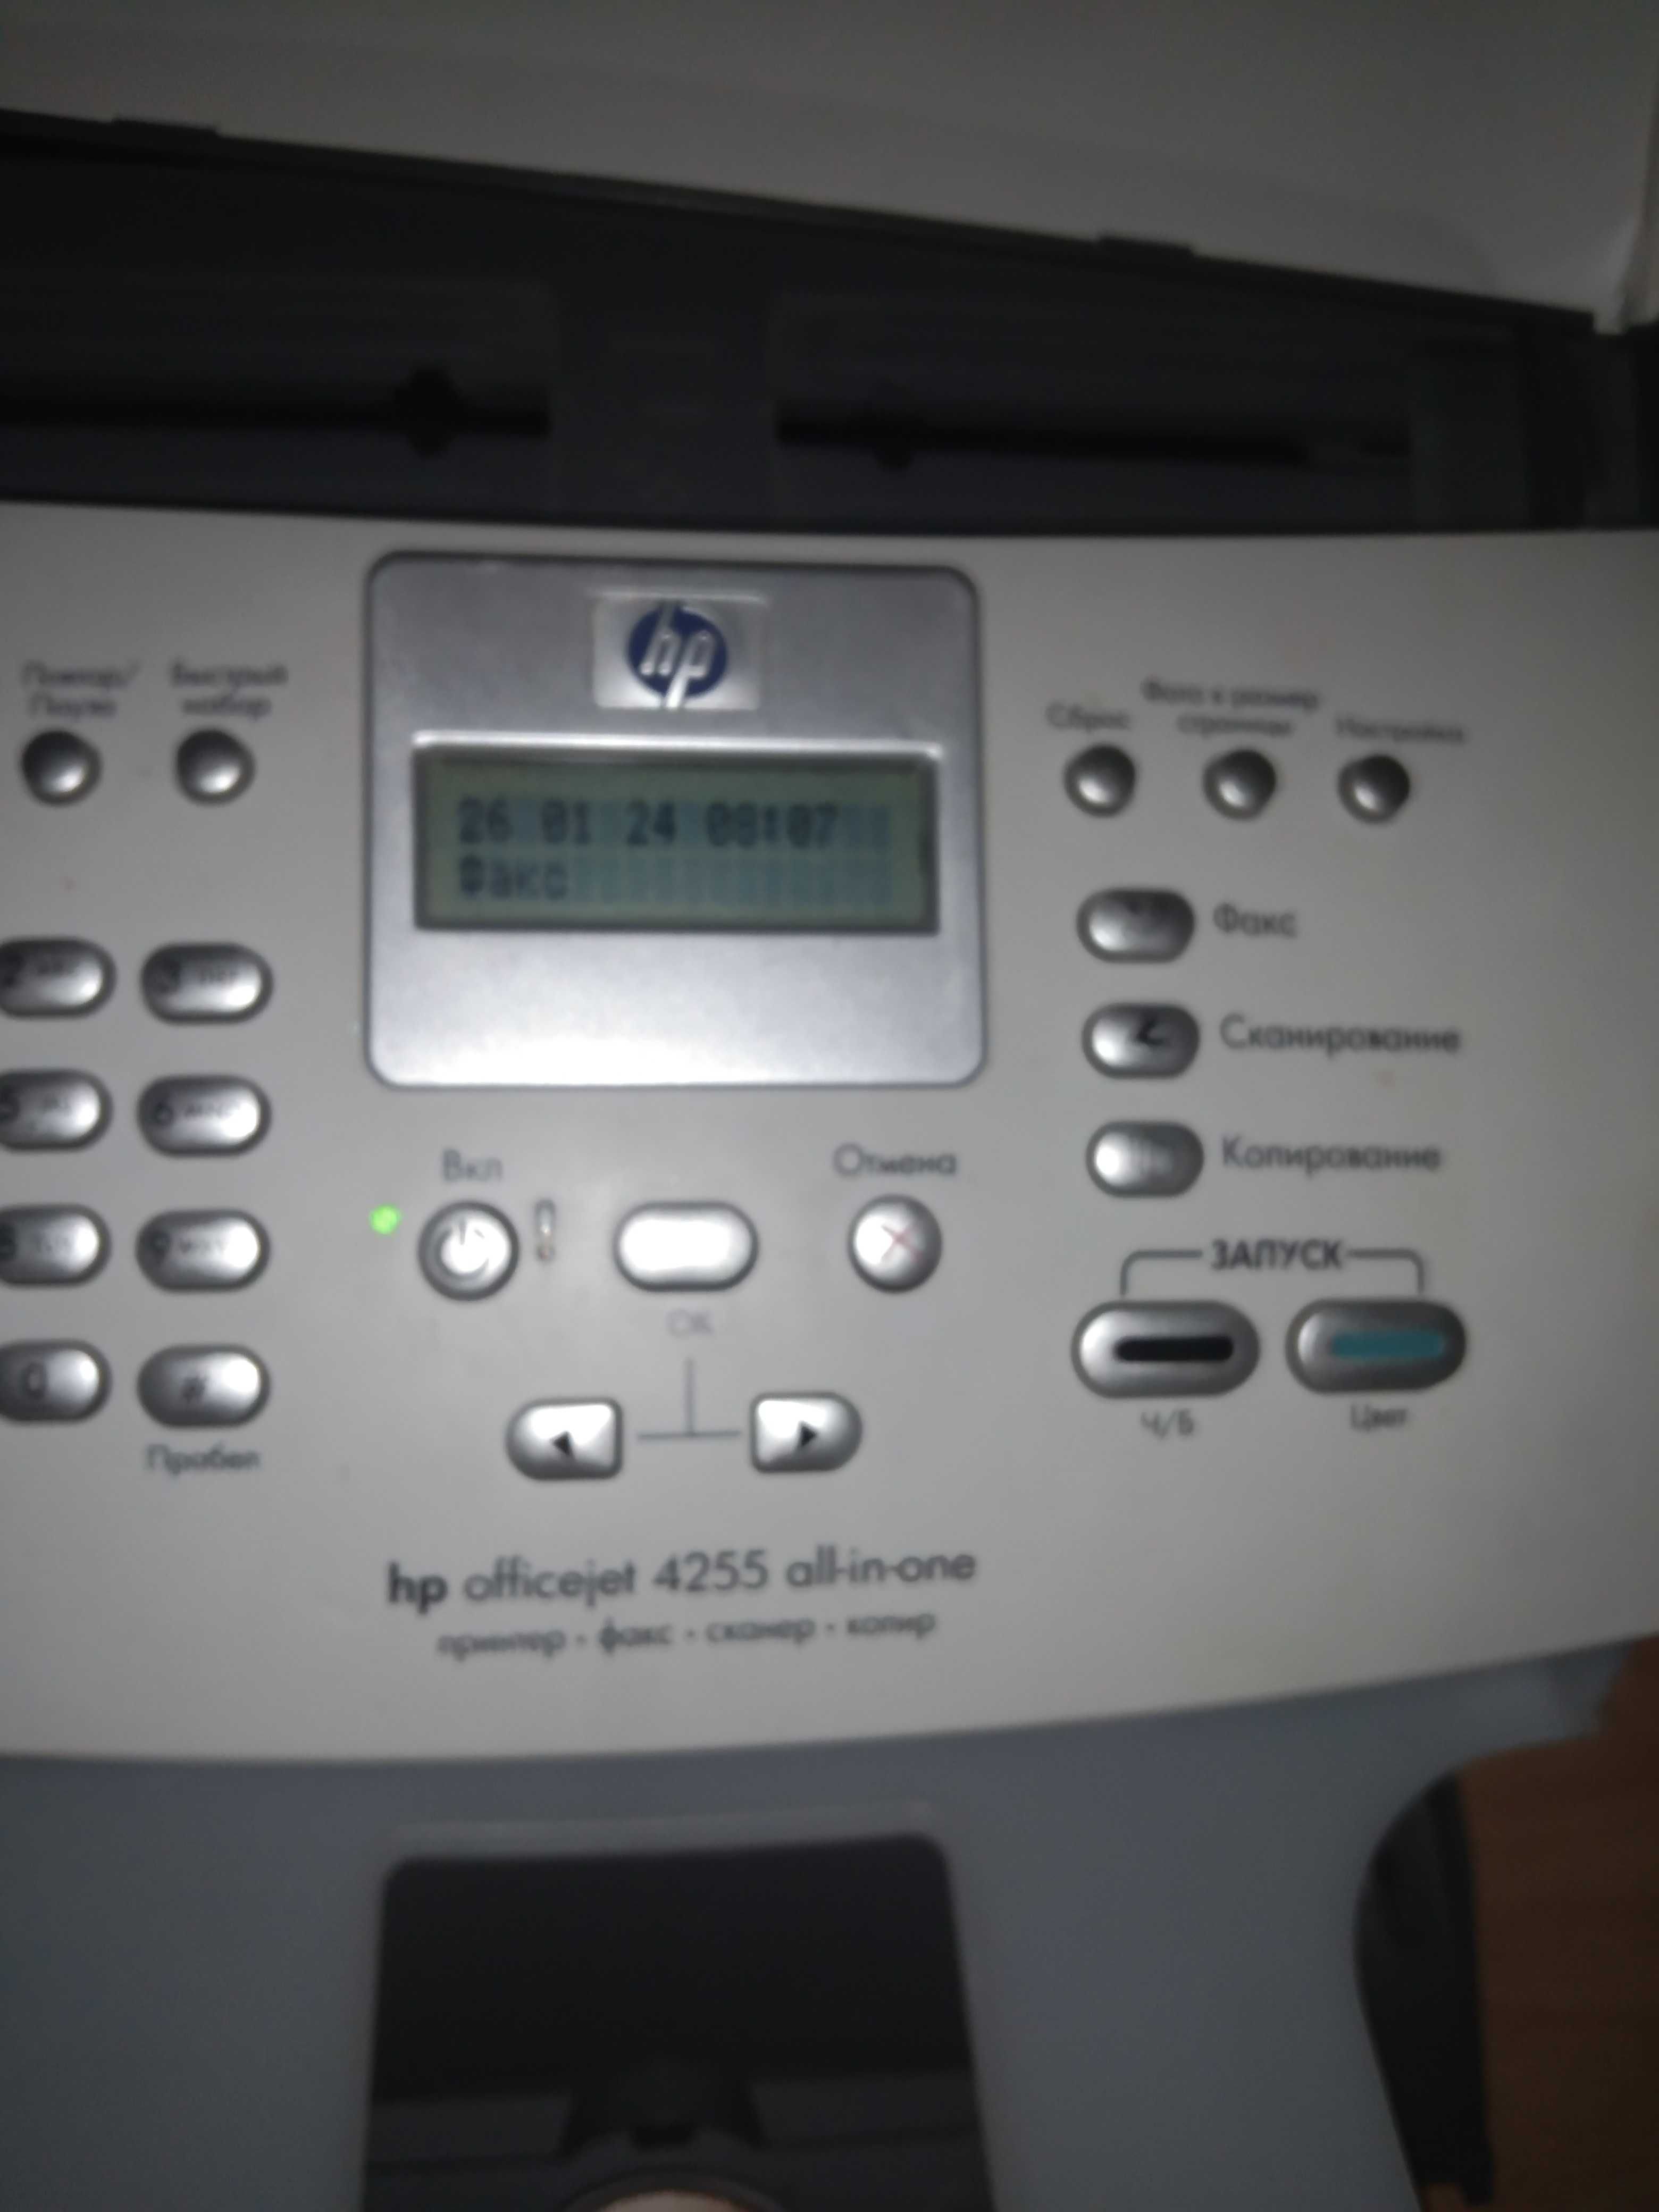 продам принтер+факс+телефон+сканер